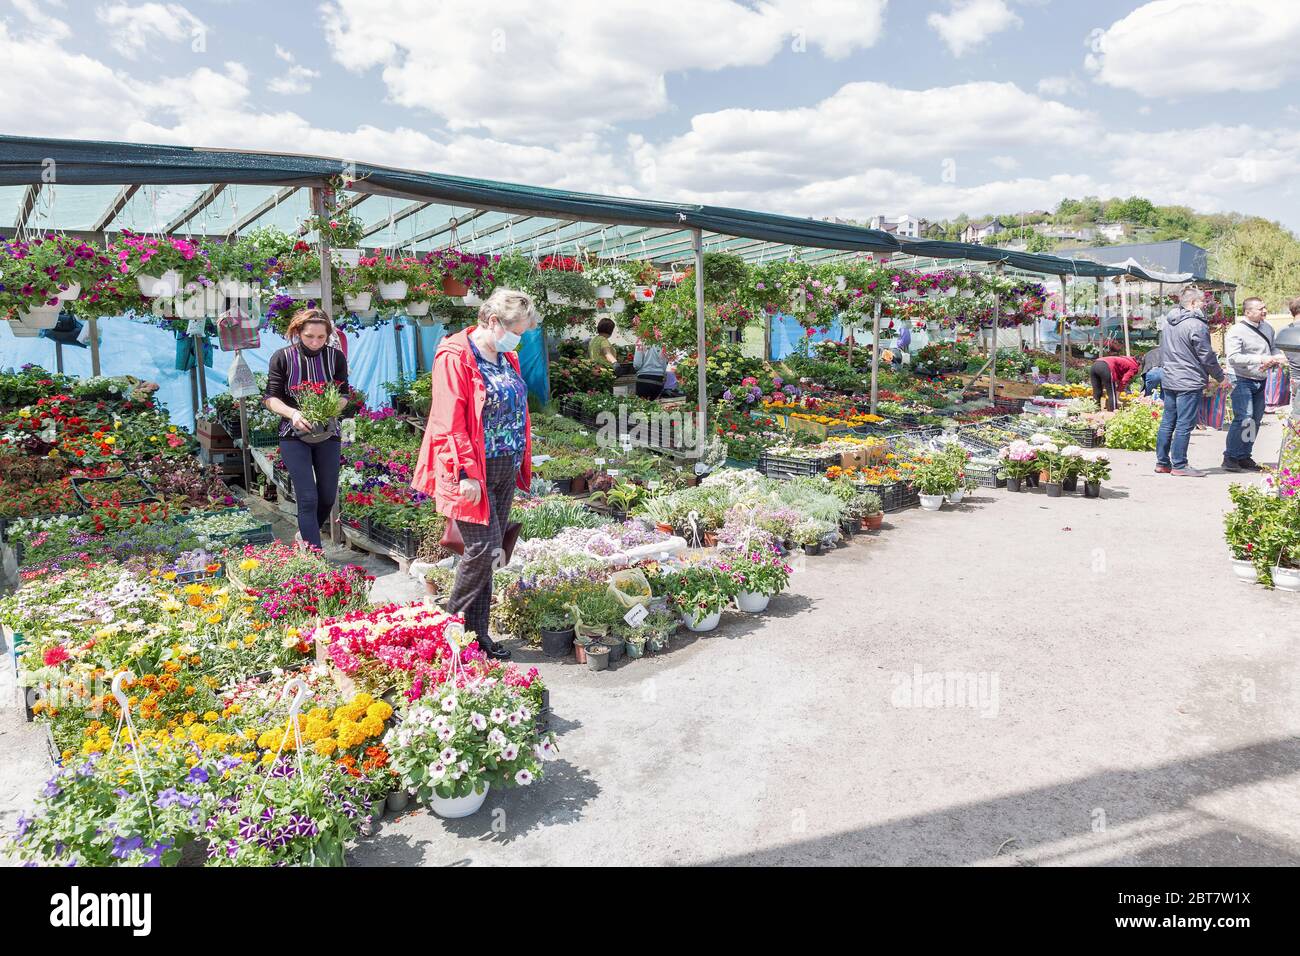 KIEW, UKRAINE - 09. MAI 2020: Menschen in medizinischen Masken besuchen Garten Blumen und Pflanzen Markt im Freien gerade nach COVID-19 Quarantäne Schwächung geöffnet. Stockfoto